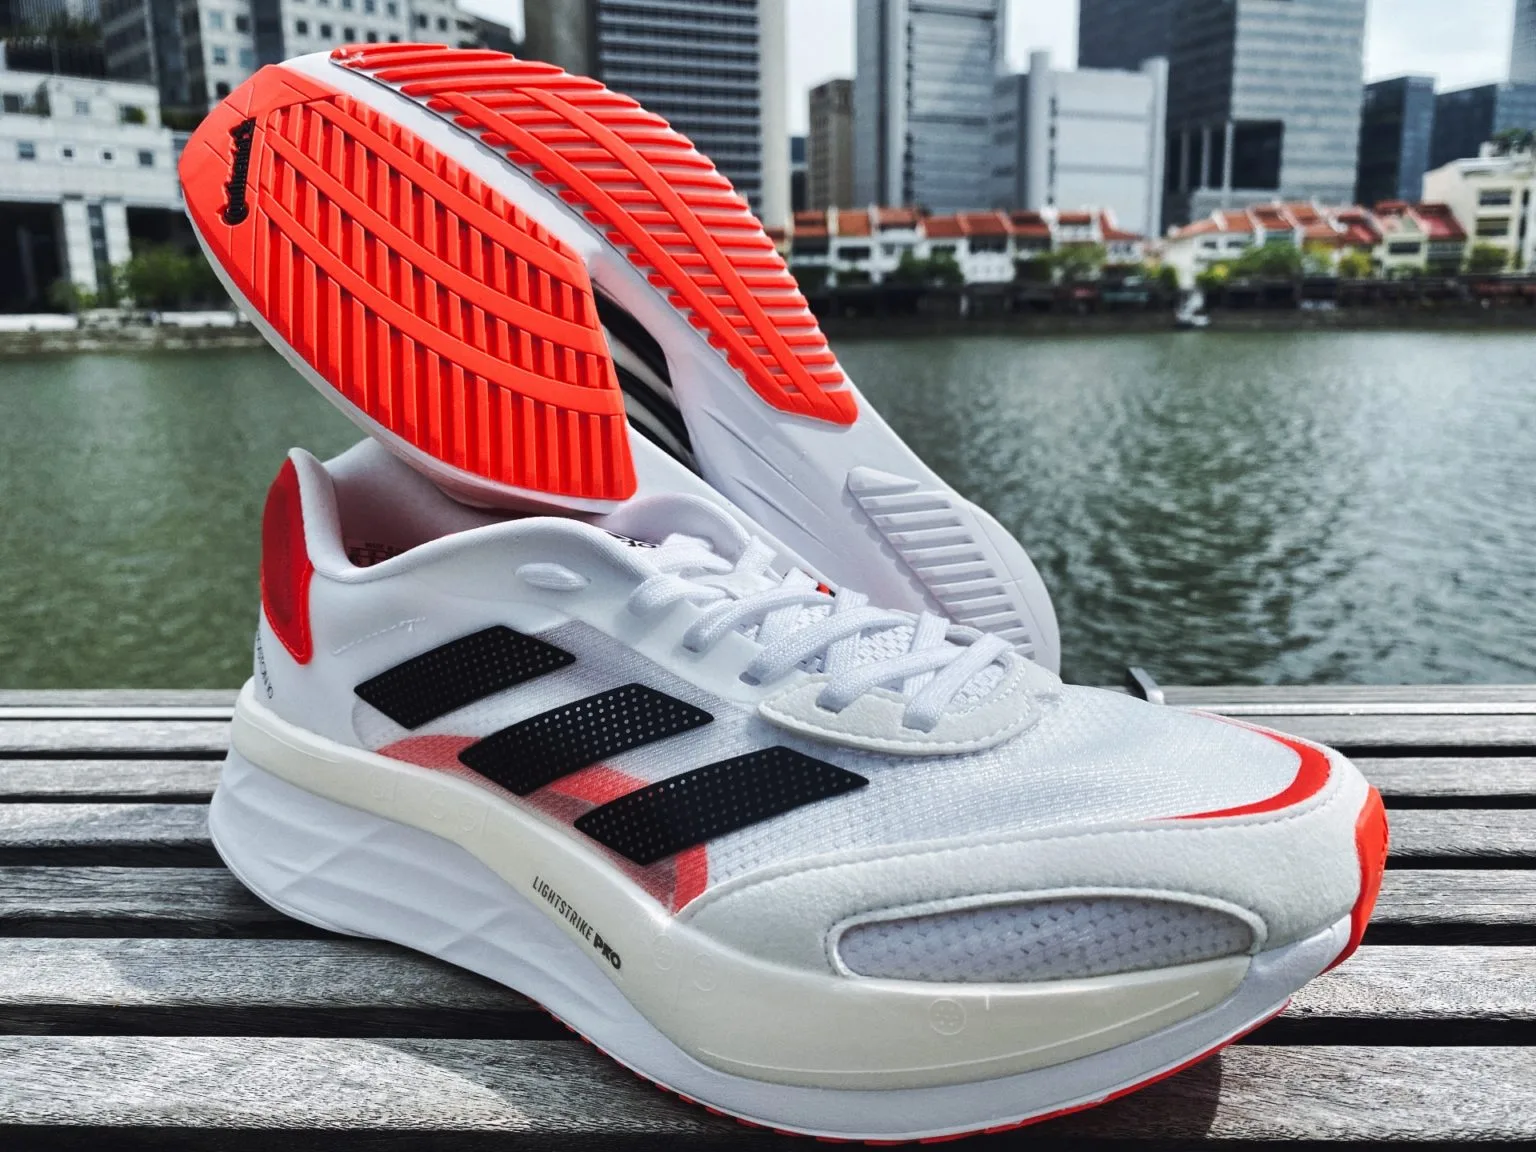 sol sepatu Ultraboost memberikan respons yang luar biasa terhadap setiap langkah Anda, menjadikannya pilihan yang ideal untuk lari pagi